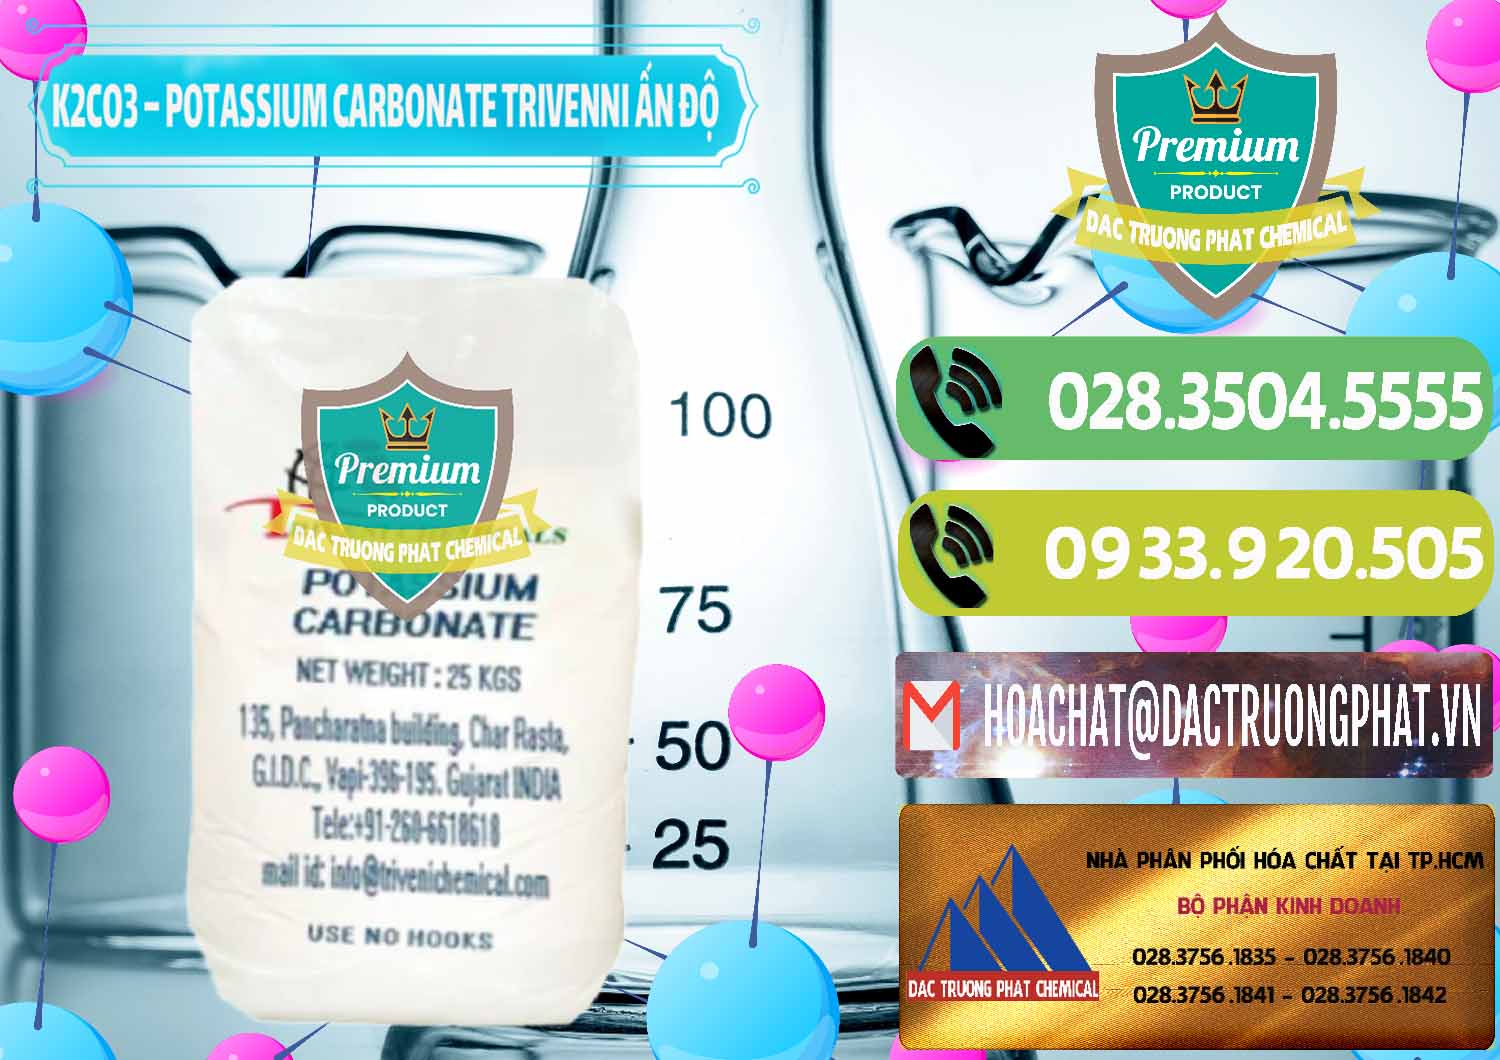 Cty chuyên bán và phân phối K2Co3 – Potassium Carbonate Trivenni Ấn Độ India - 0473 - Cty nhập khẩu và cung cấp hóa chất tại TP.HCM - hoachatmientay.vn